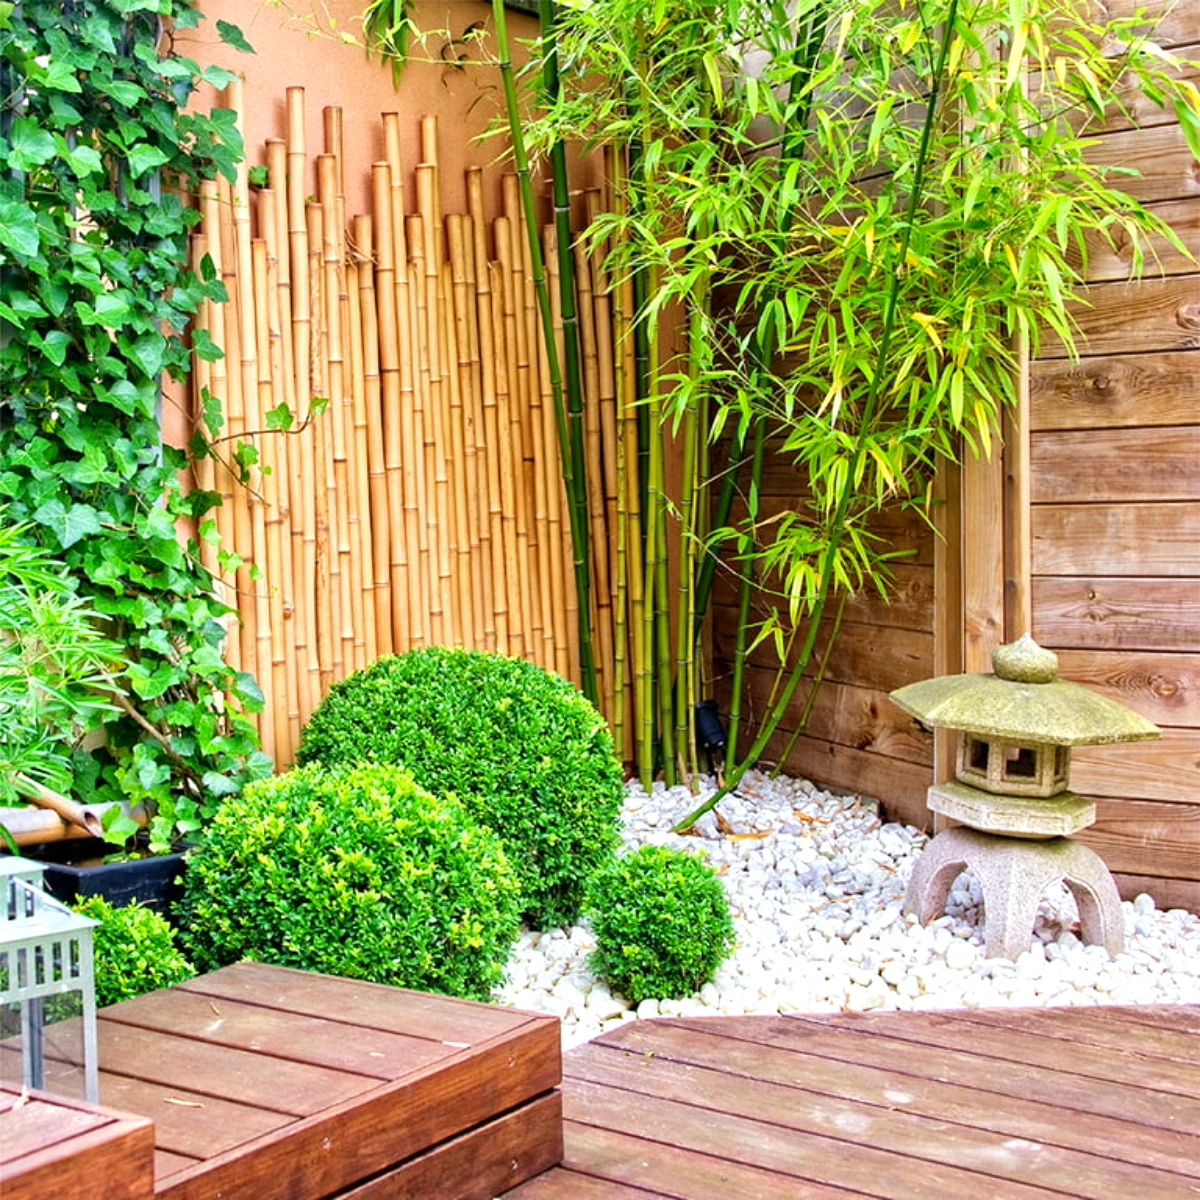 jardin en bois avec des cailloux blancs bambous et plantes vertes